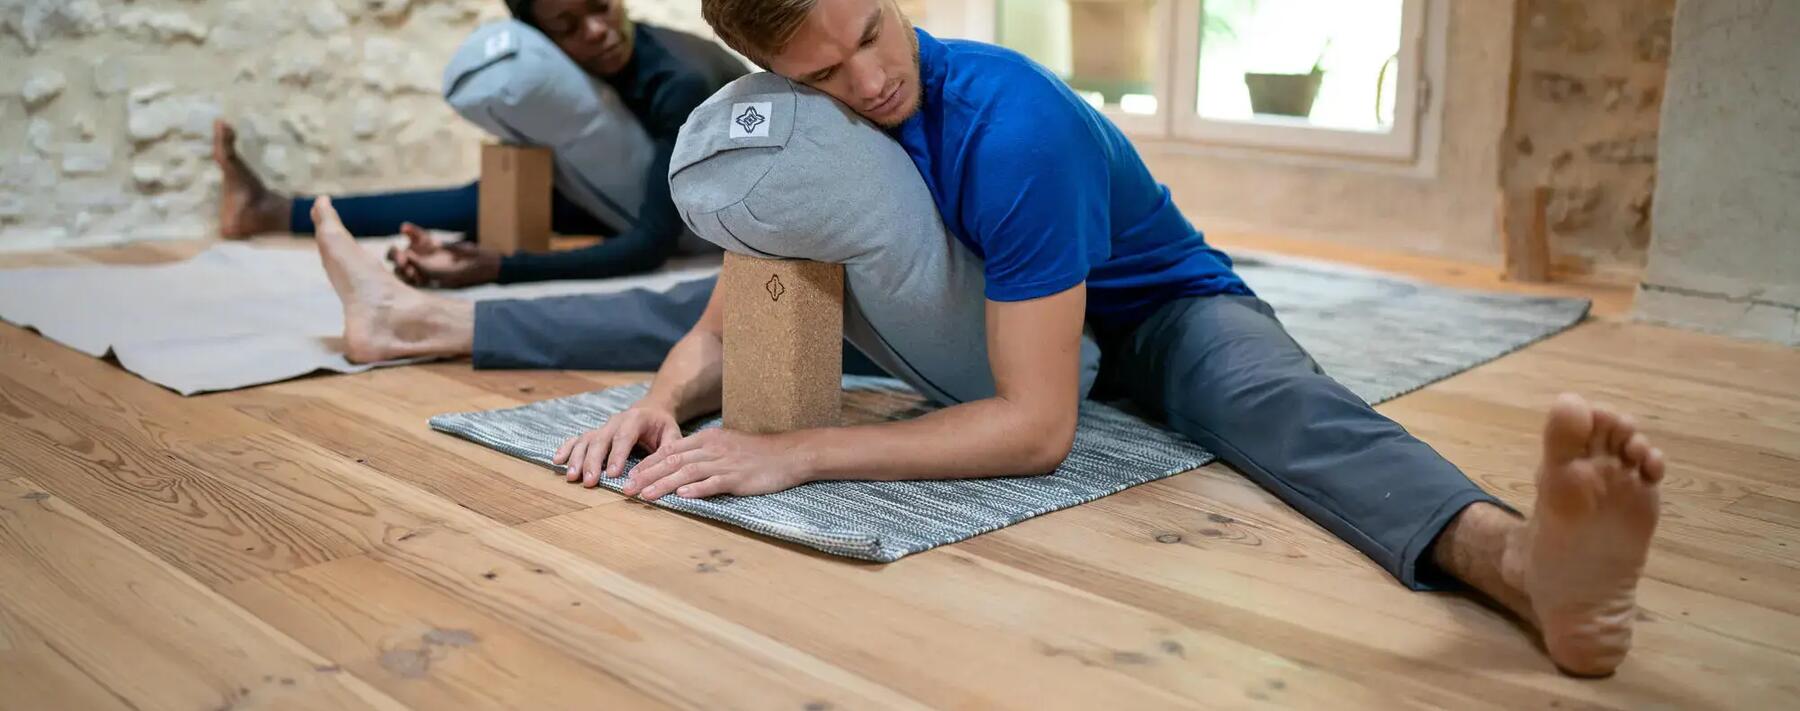 Como escolher um tapete de yoga? 